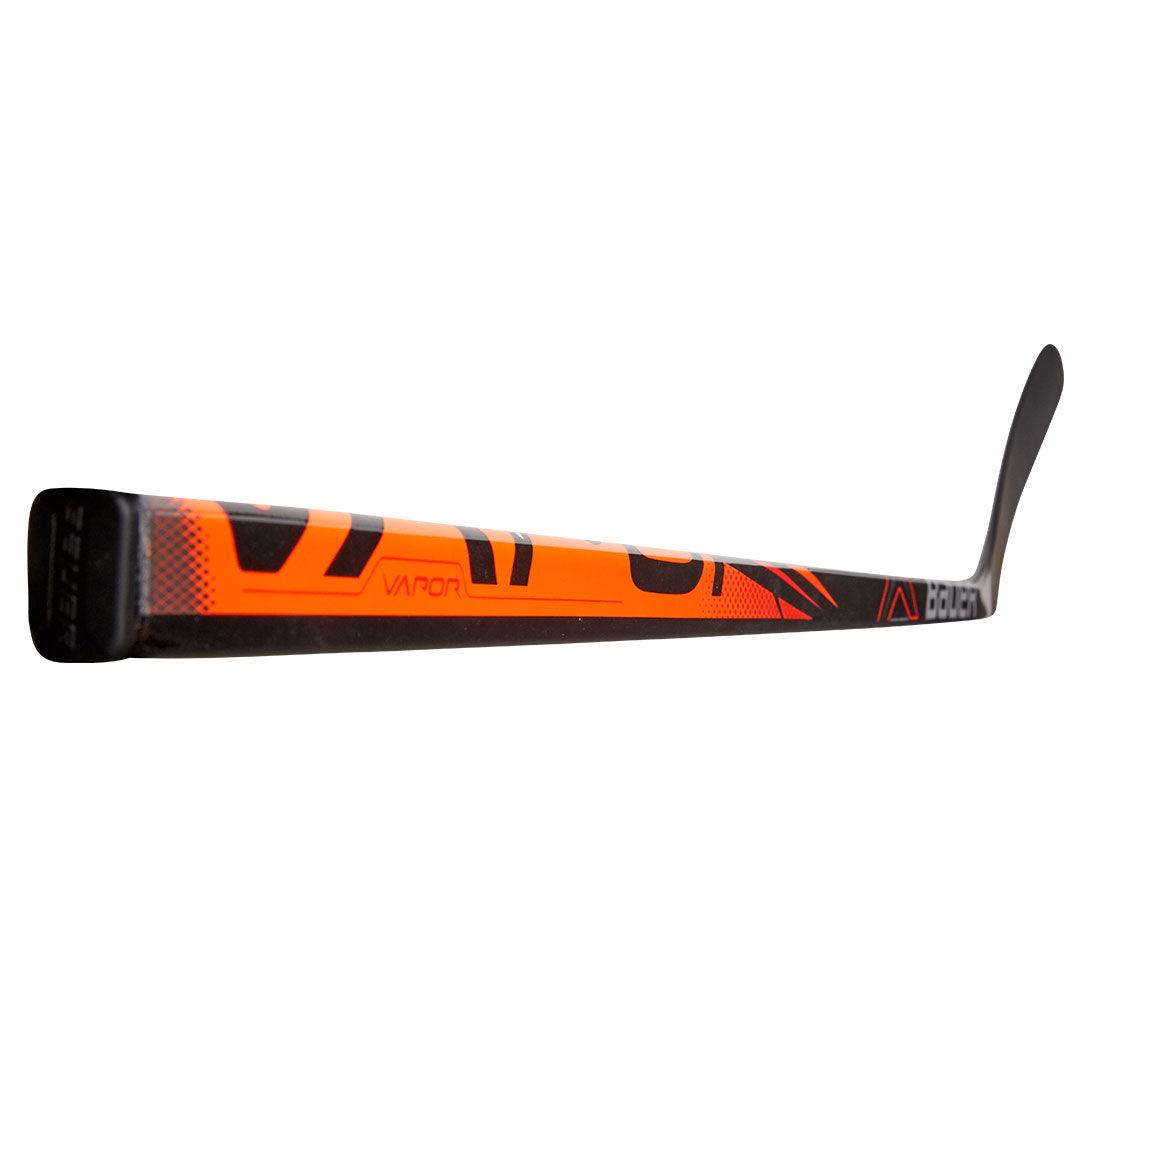 Vapor Prodigy 46" Hockey Stick - Youth - Sports Excellence